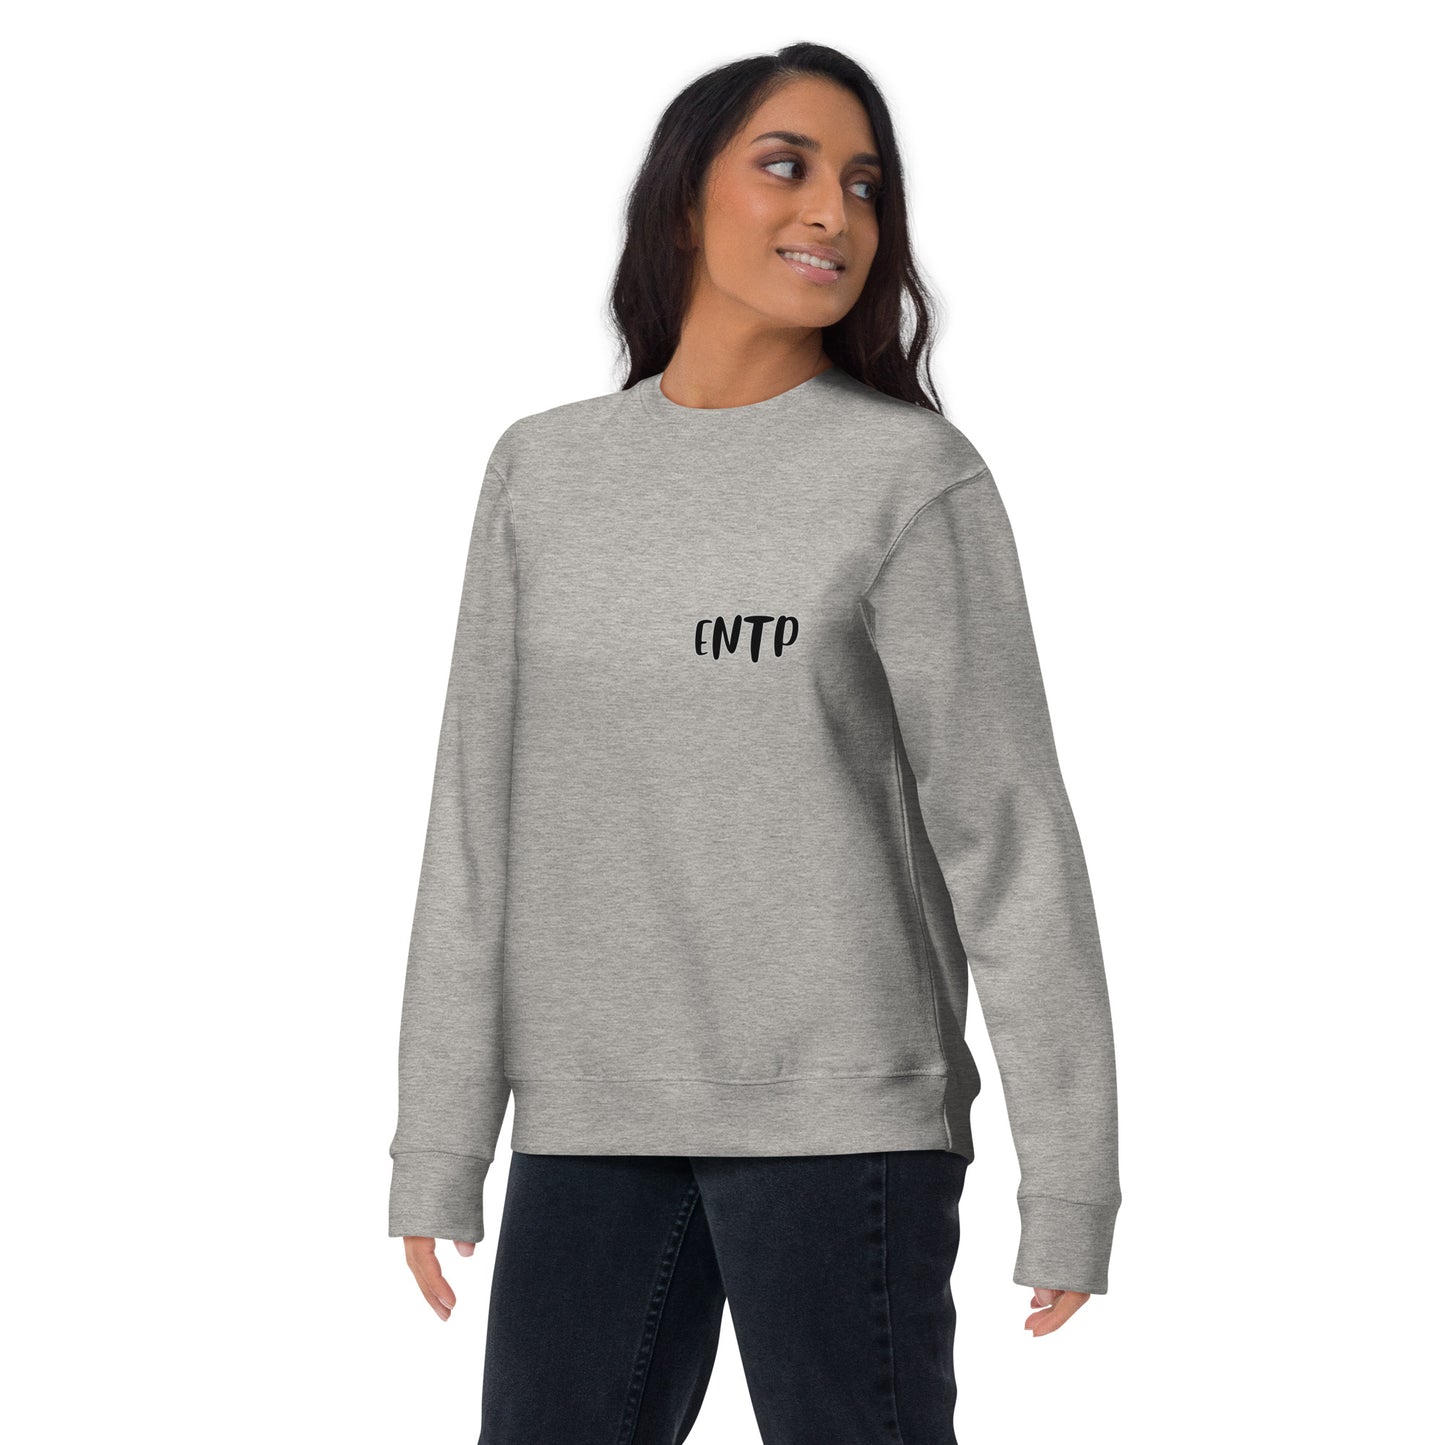 ENTP MBTI Unisex Premium Sweatshirt